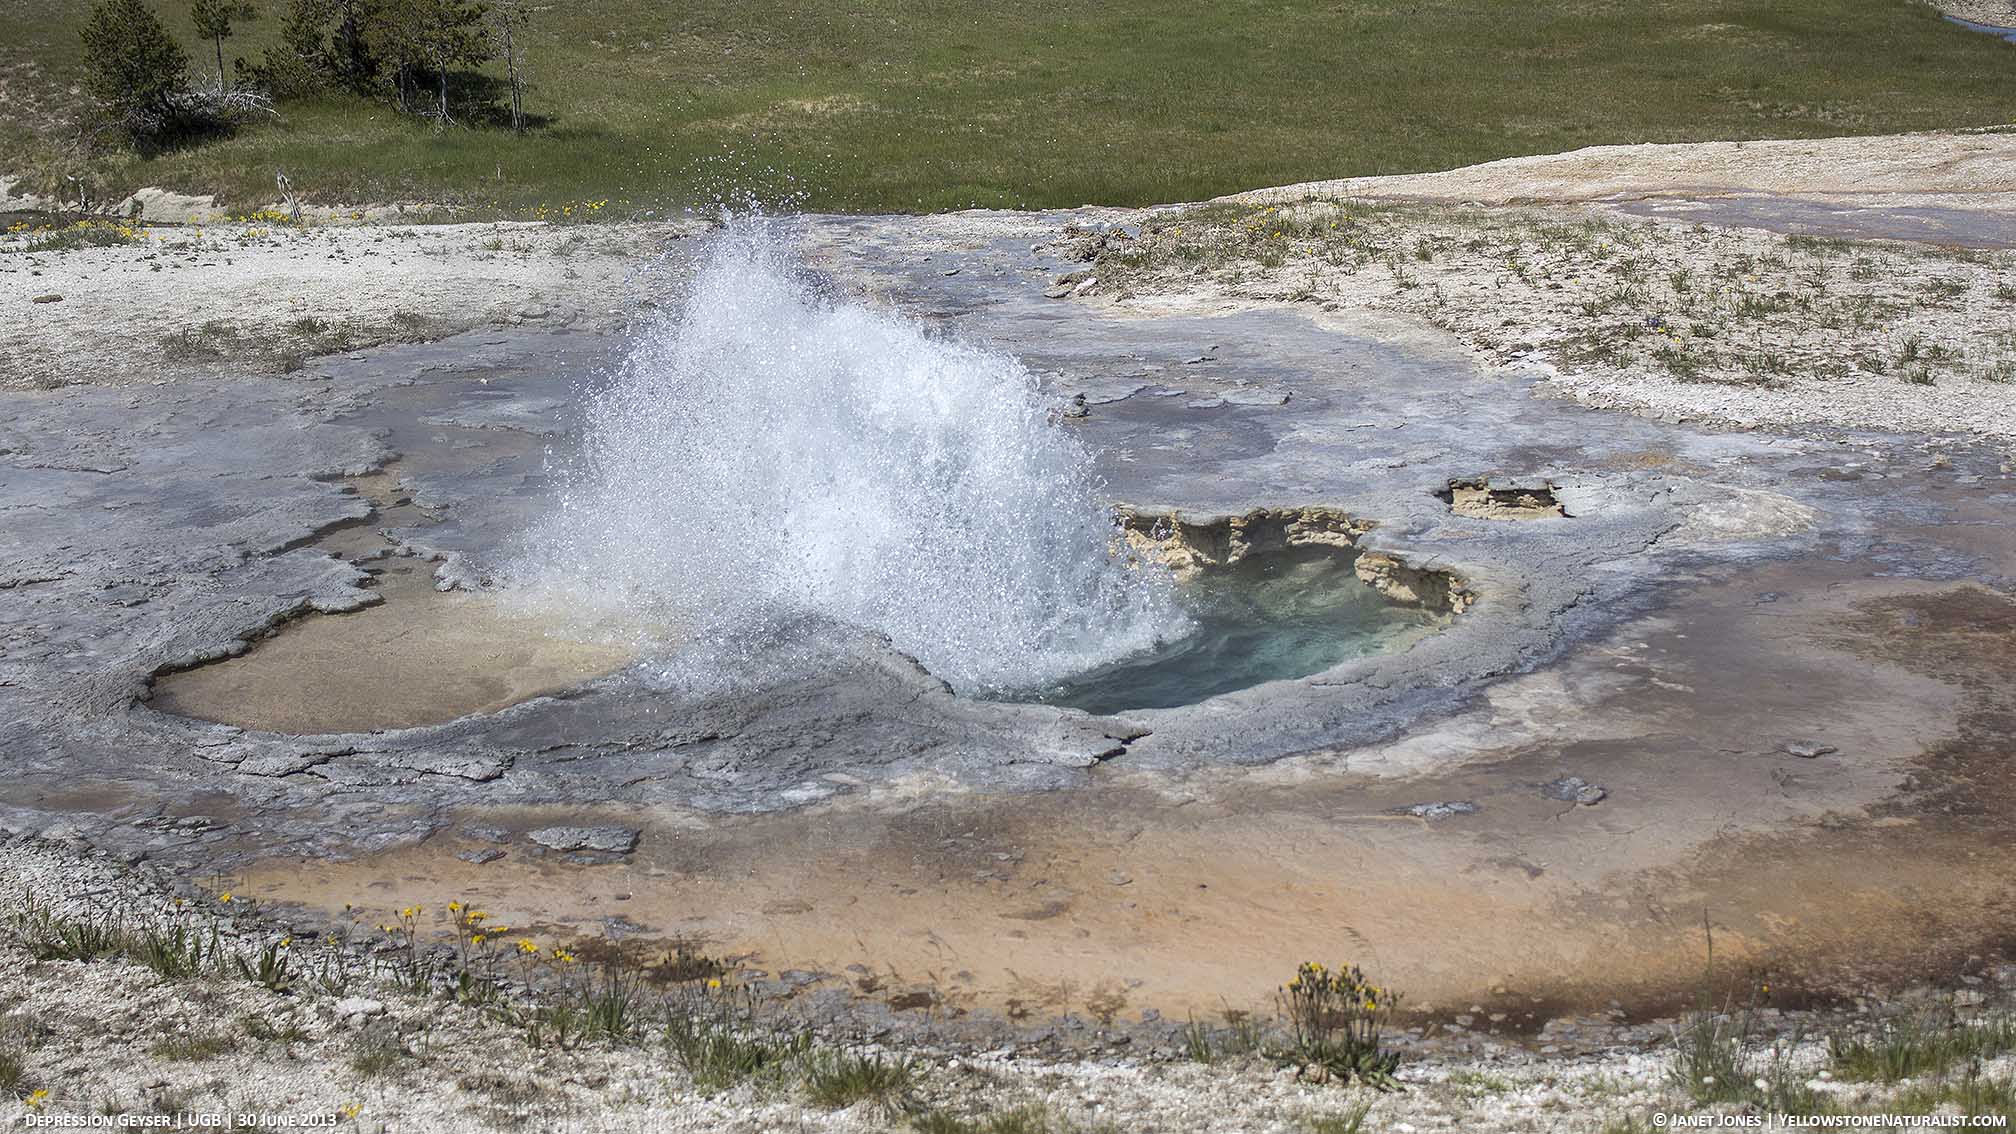 Depression Geyser in eruption in Yellowstone